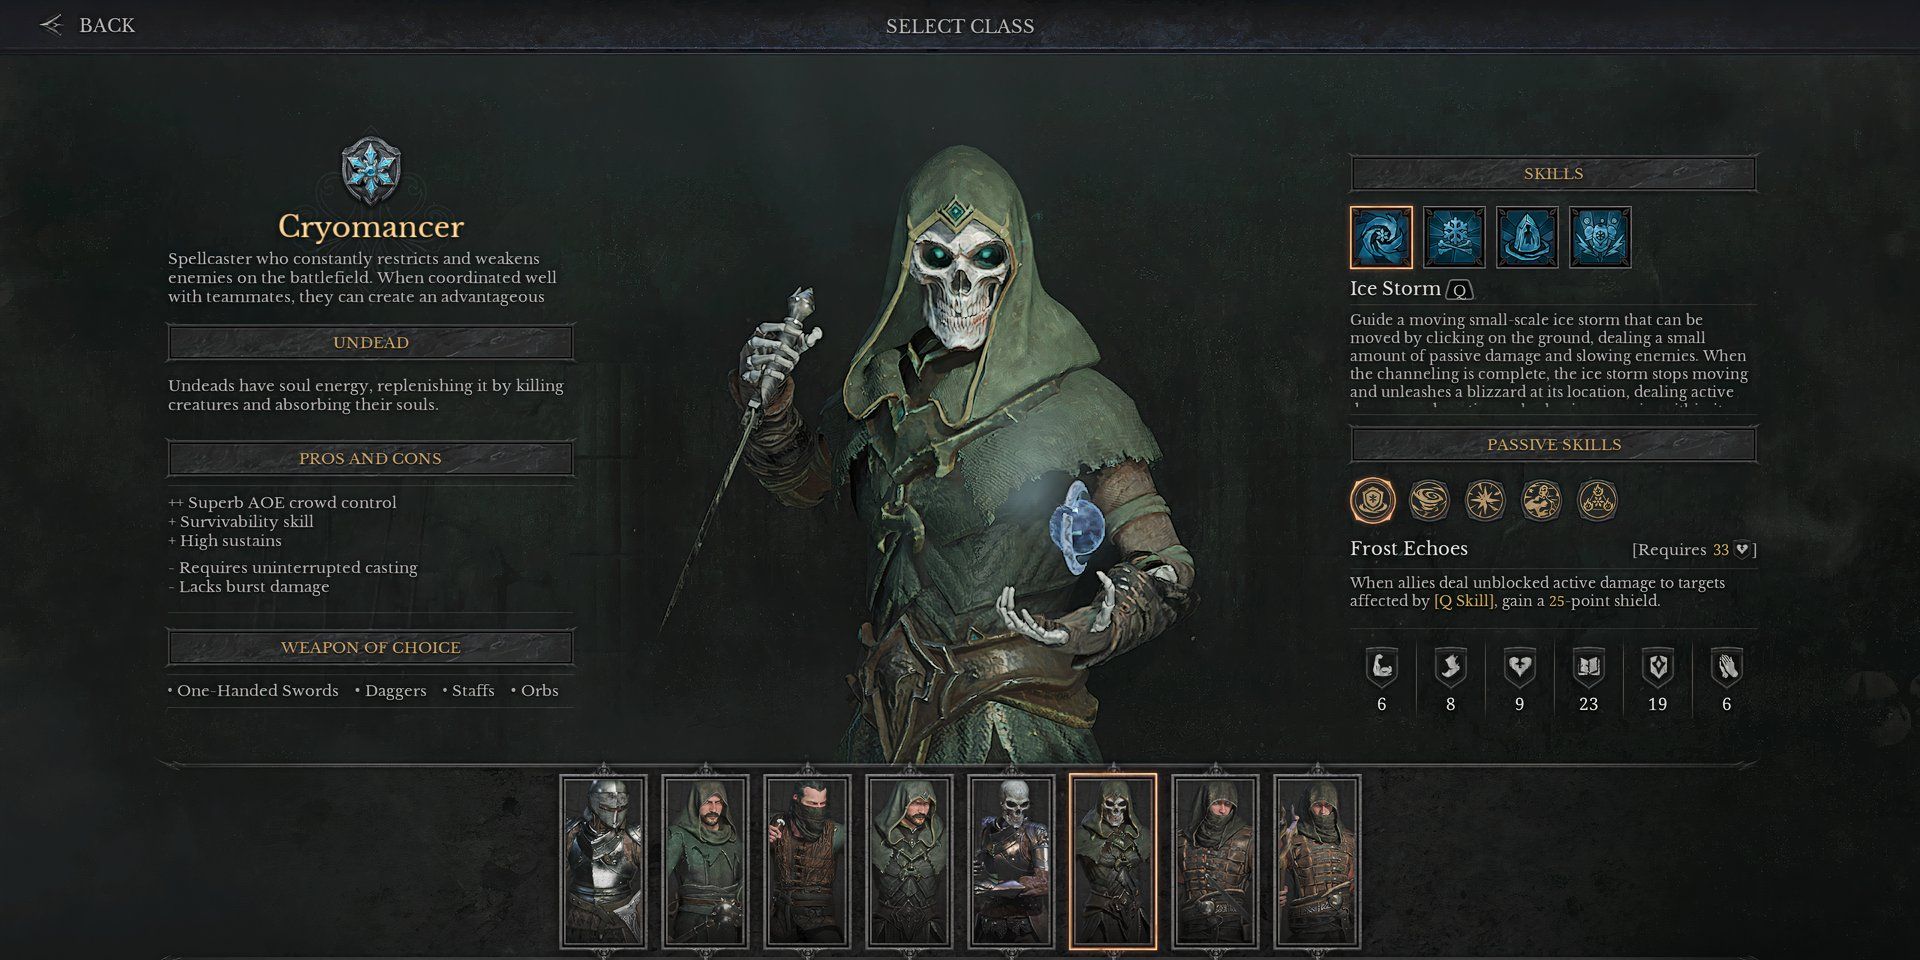 Um Cryomancer na tela de seleção de personagem de Dungeonborne, um esqueleto em uma túnica verde, segurando uma adaga e um orbe flutuante.